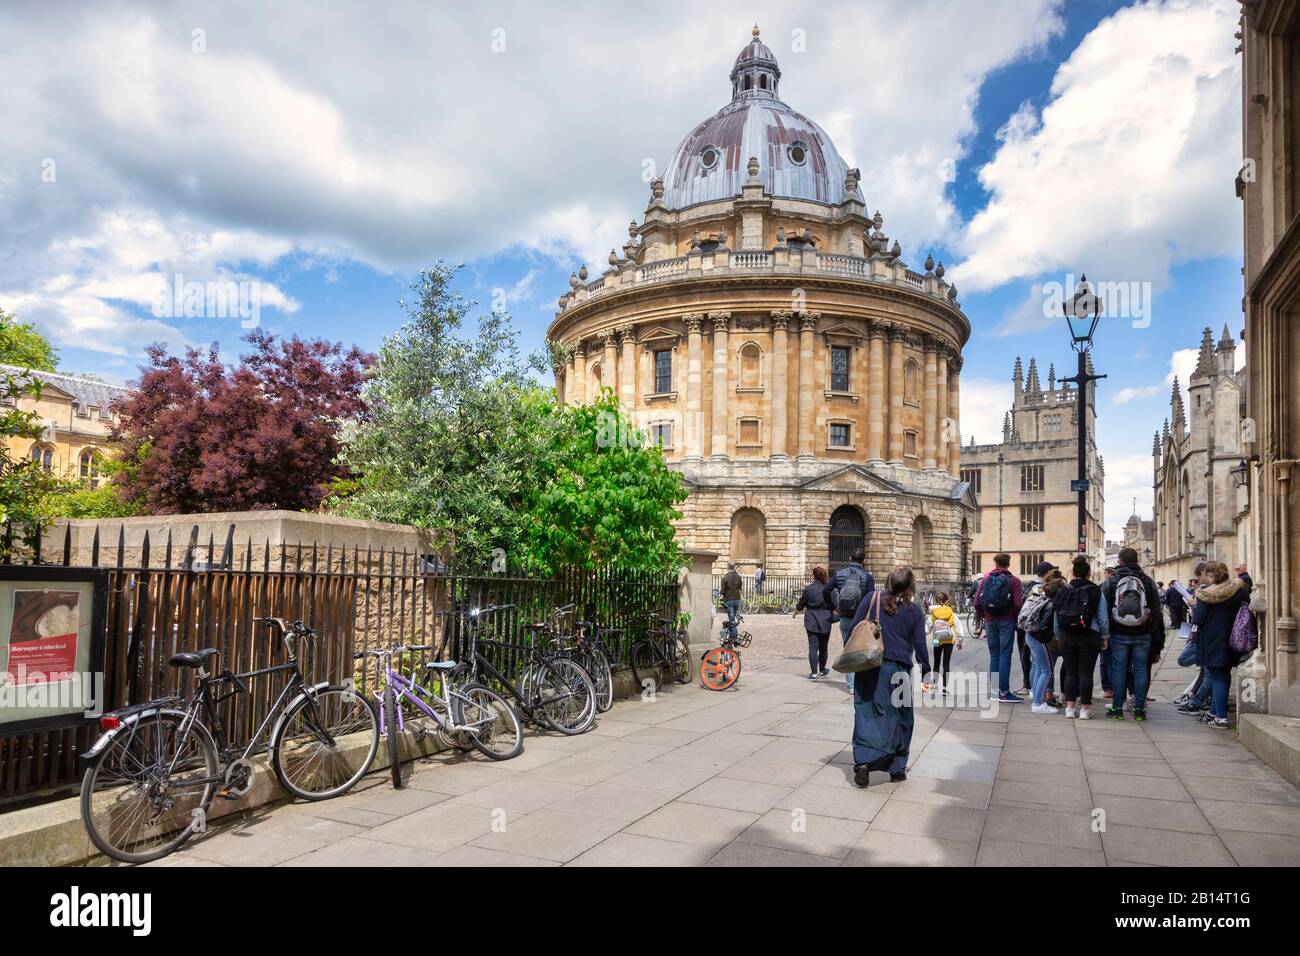 6 juin 2019 : Oxford, Royaume-Uni - les touristes à la Radcliffe Camera, célèbre bibliothèque universitaire rattaché à l'Université d'Oxford, conçu par James Gibbs en style néo-clas Banque D'Images